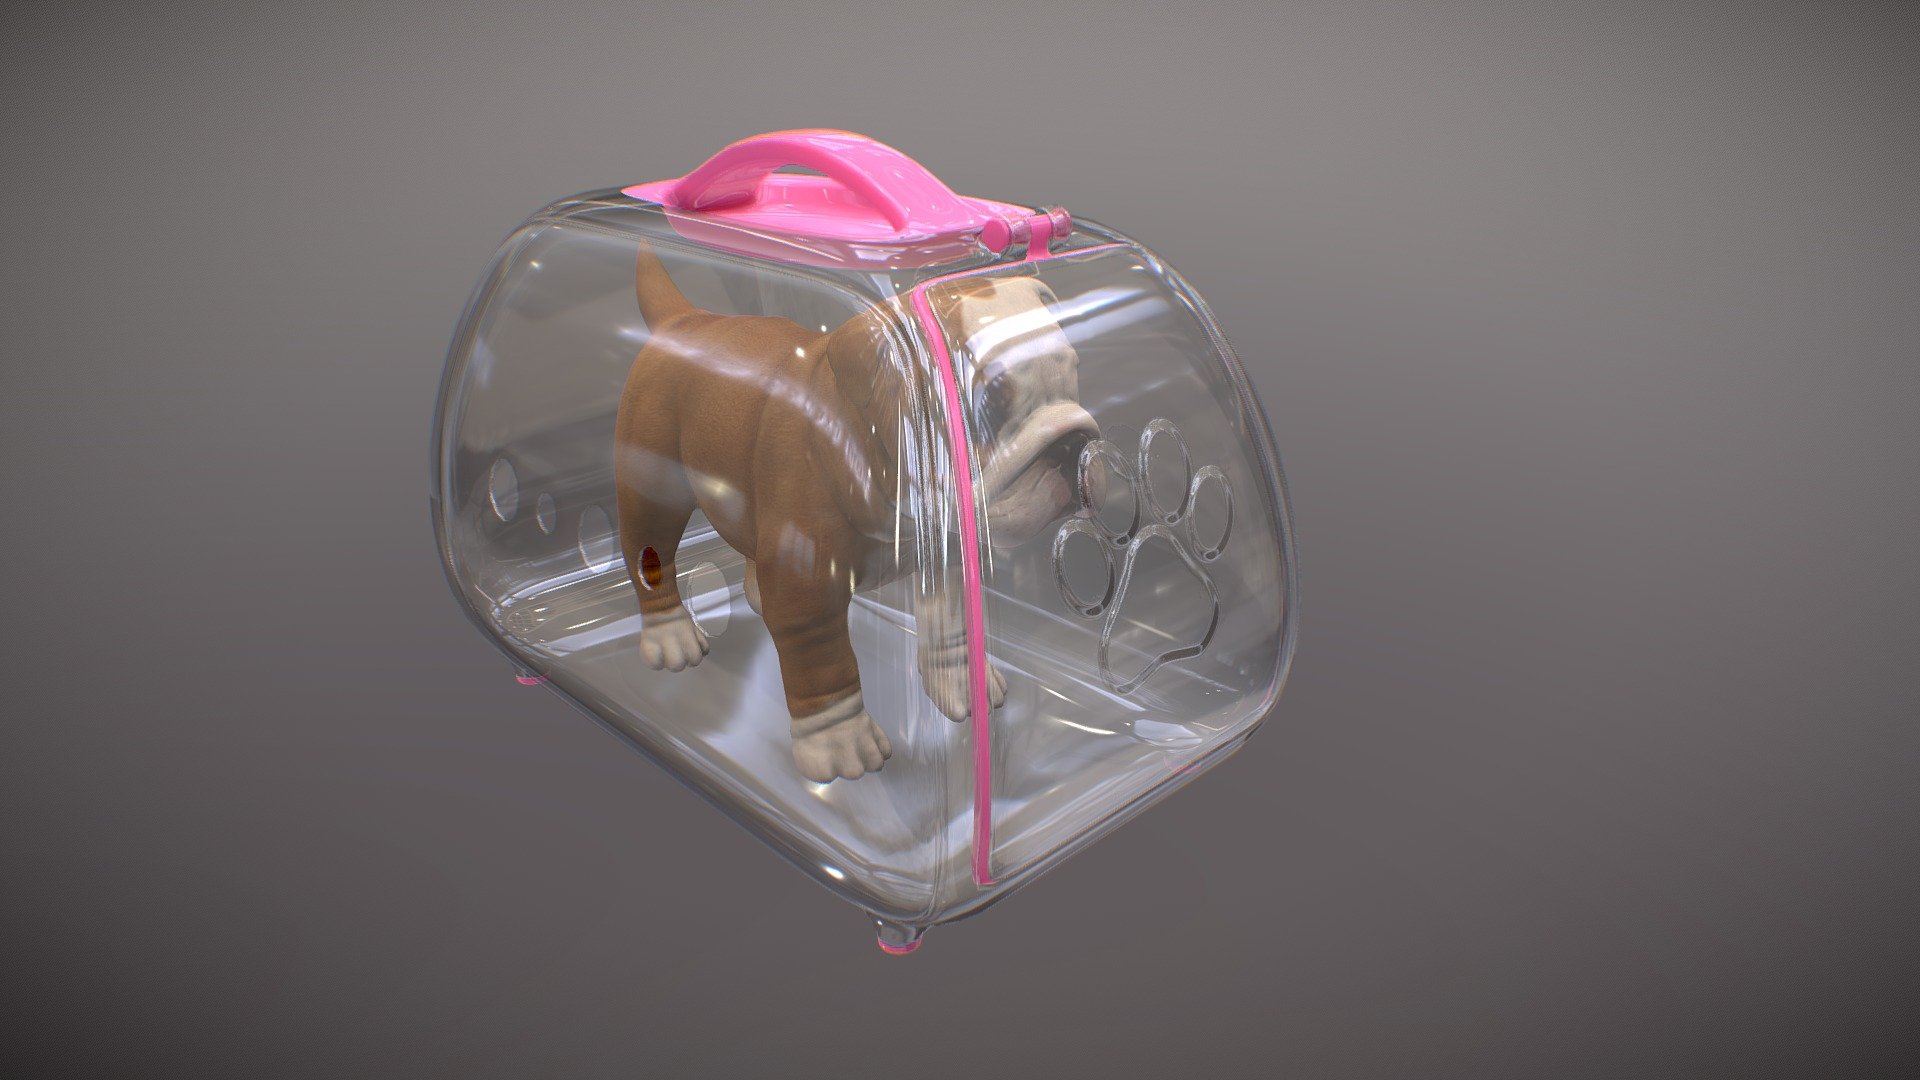 Proptótipo de caixa transportadora p/ pets (pet carrier prototype)

Dog model by FainoDS - Caixa transportadora p/ pets (Pet Carrier) - 3D model by Rafa Andrade (@rafa_andrade) 3d model